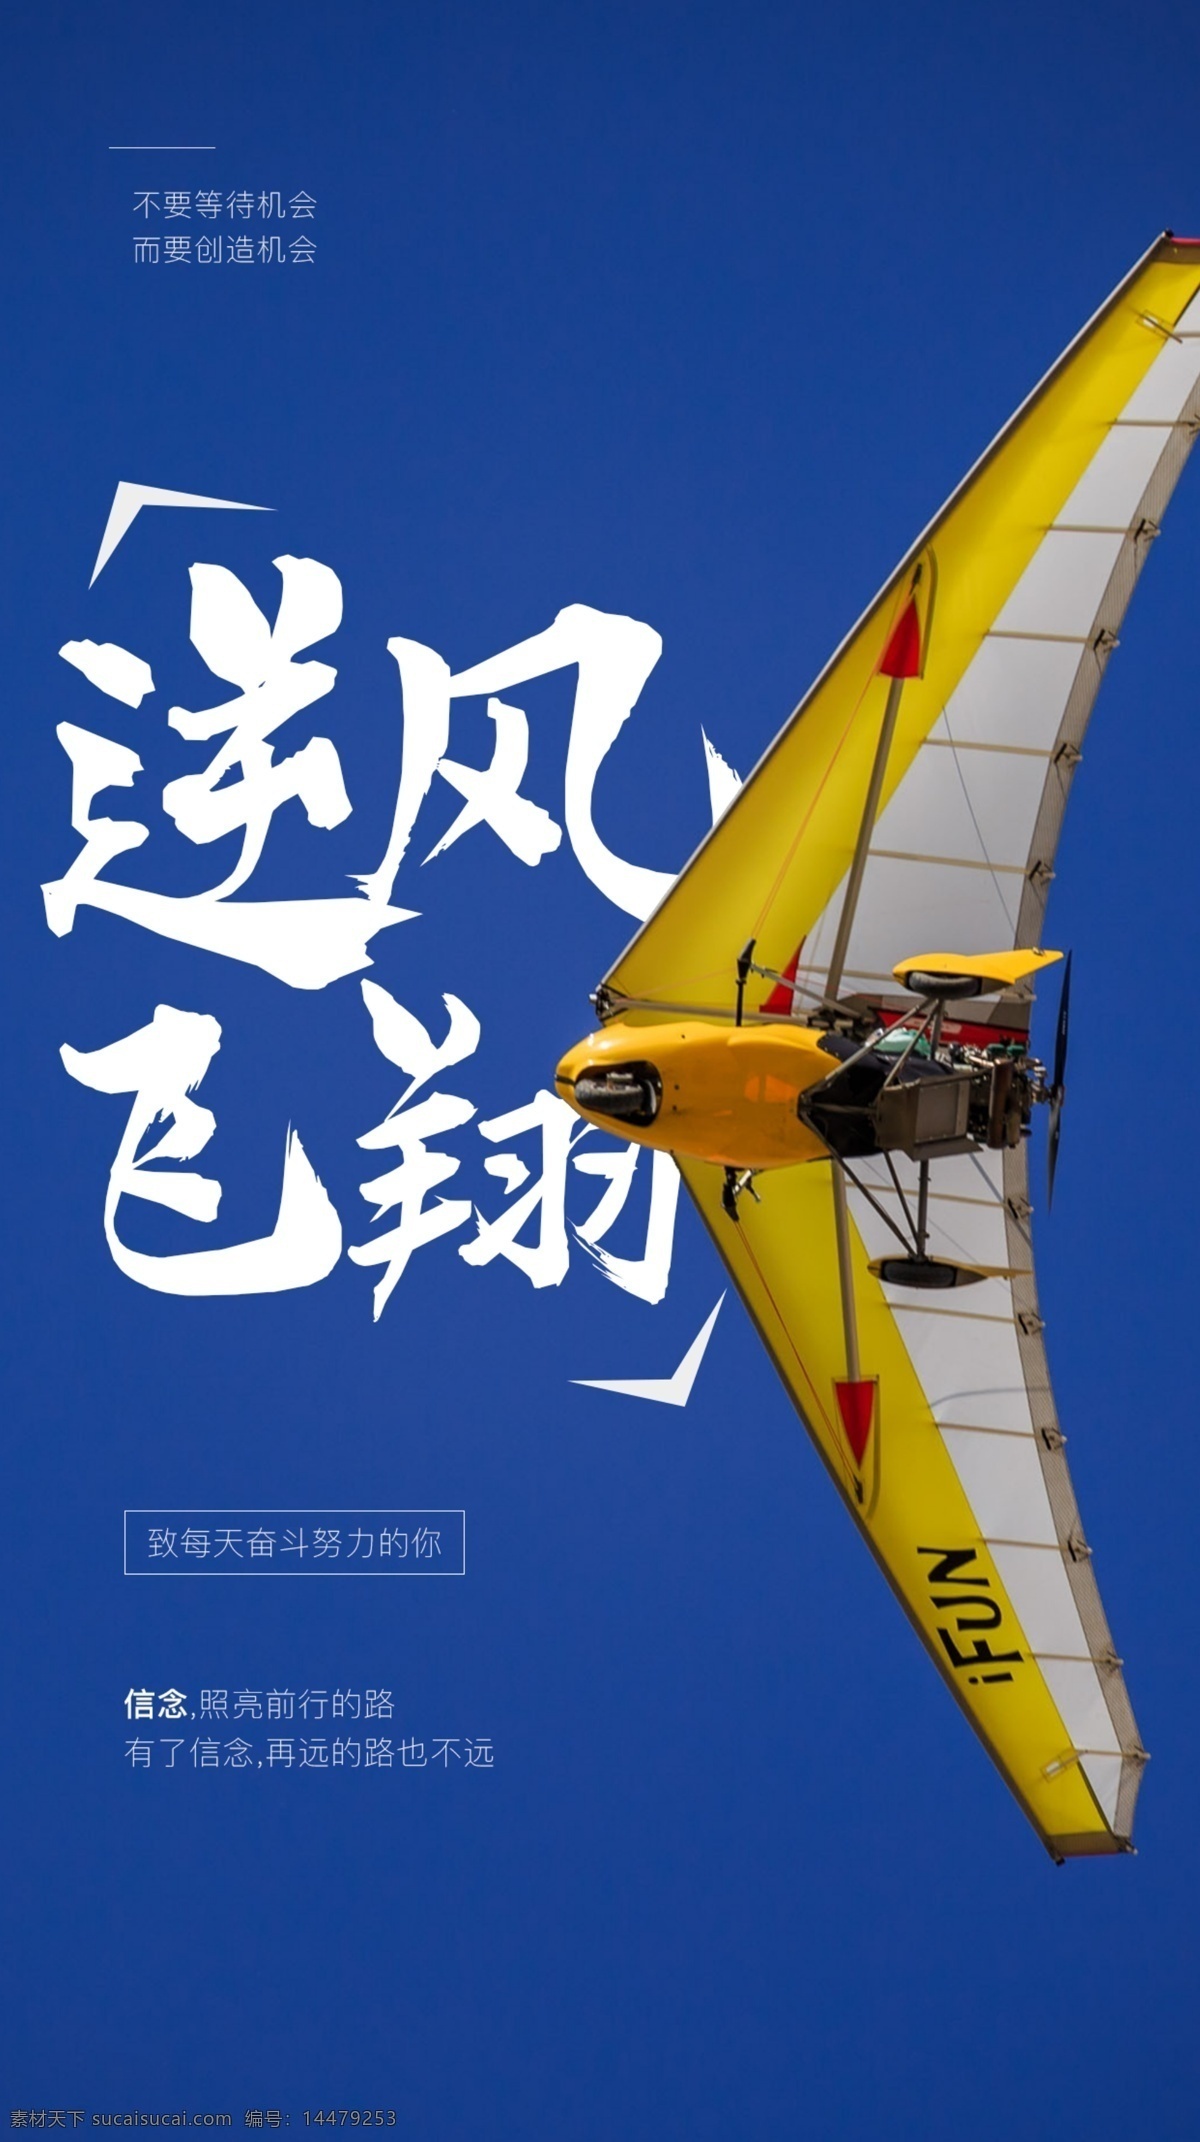 逆风 飞翔 企业 文化活动 海报 素材图片 逆风飞翔 文化 活动